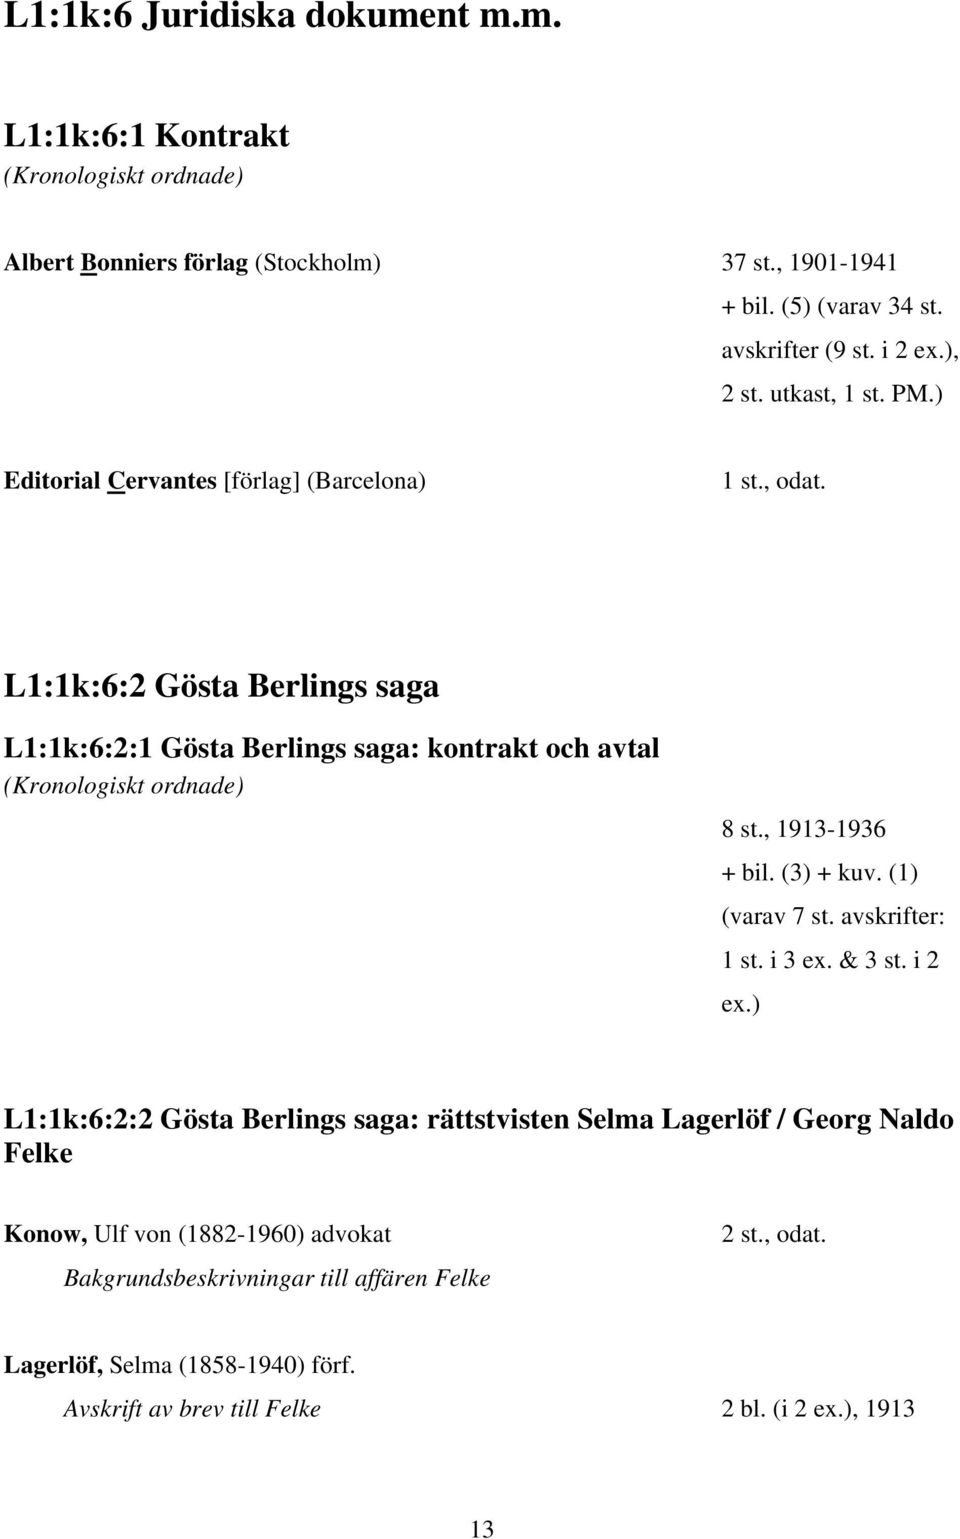 L1:1k:6:2 Gösta Berlings saga L1:1k:6:2:1 Gösta Berlings saga: kontrakt och avtal (Kronologiskt ordnade) 8 st., 1913-1936 + bil. (3) + kuv. (1) (varav 7 st. avskrifter: 1 st.